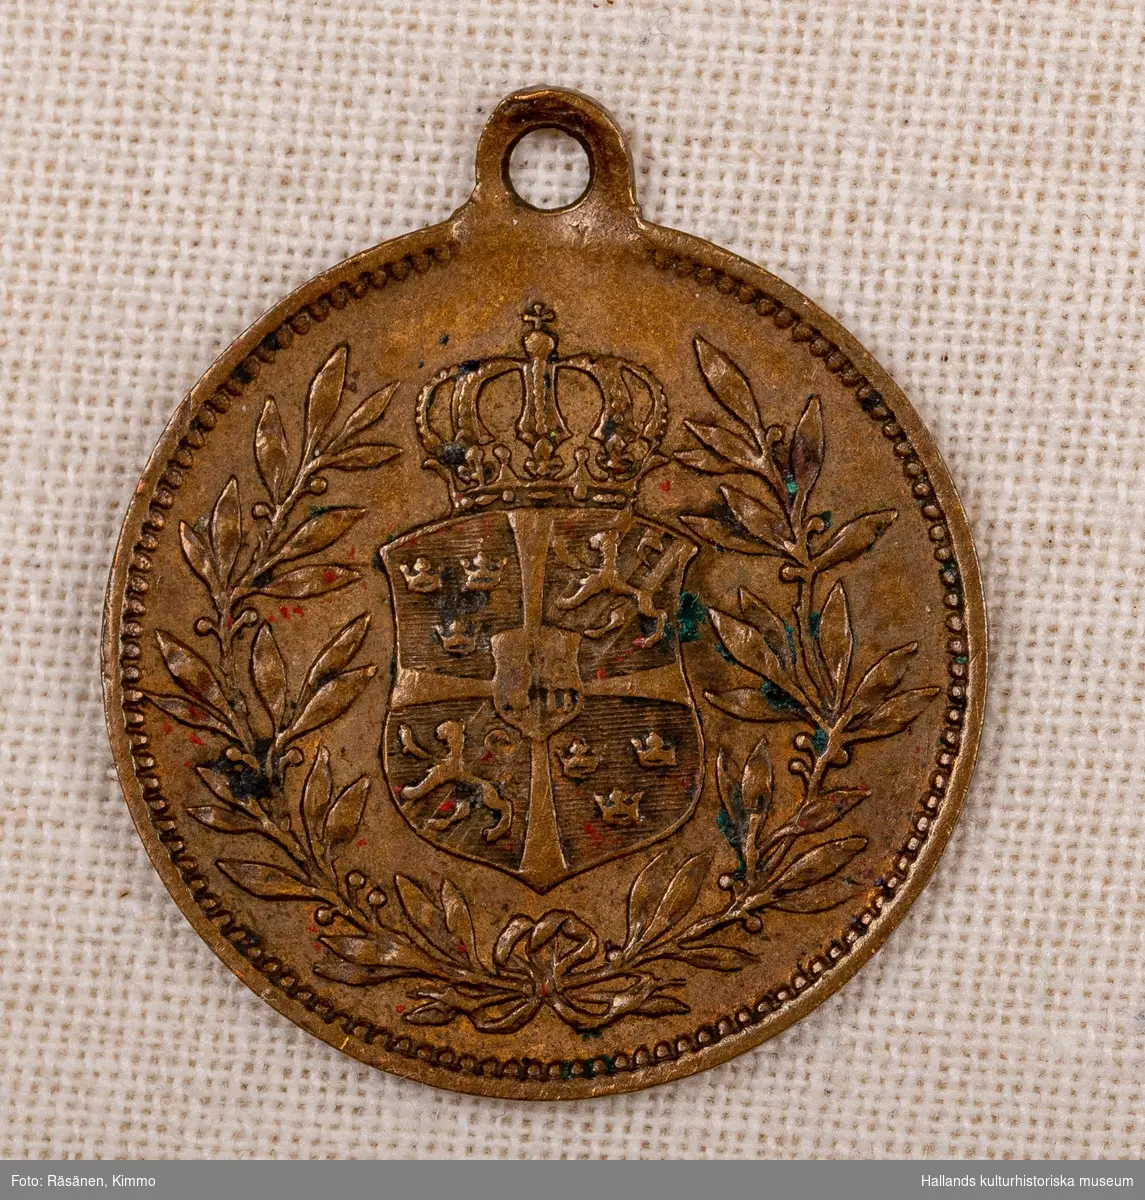 Medaljong av koppar. Porträtt i relief och text: "OSCAR II KONUNG AF SVERIGE & NORGE."